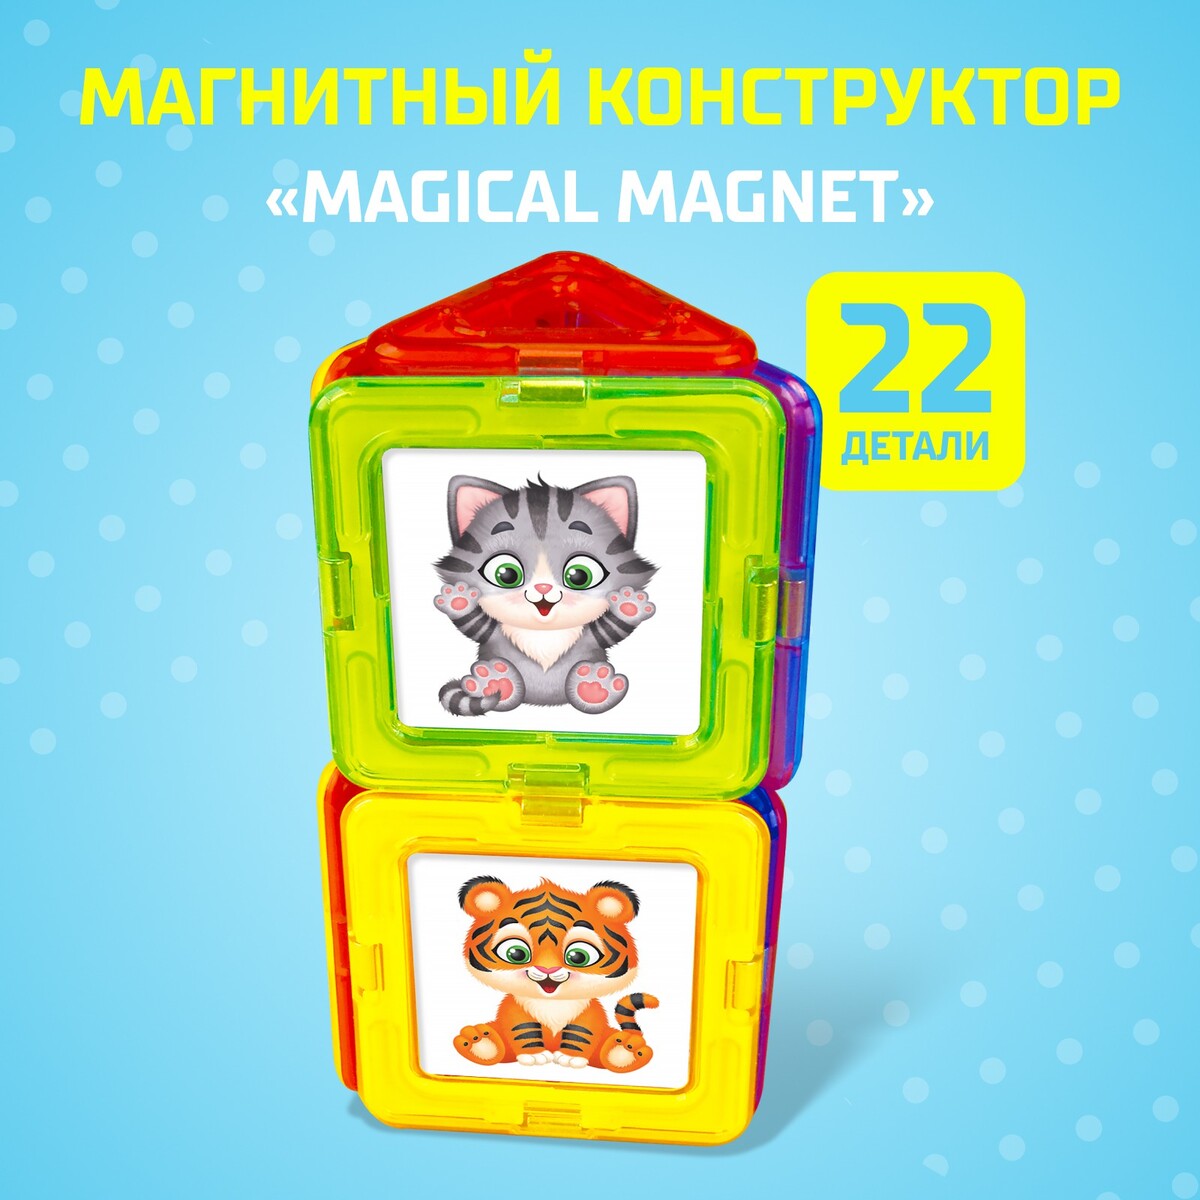 Магнитный конструктор magical magnet, 22 детали, детали матовые магнитный конструктор magical magnet 34 детали детали матовые